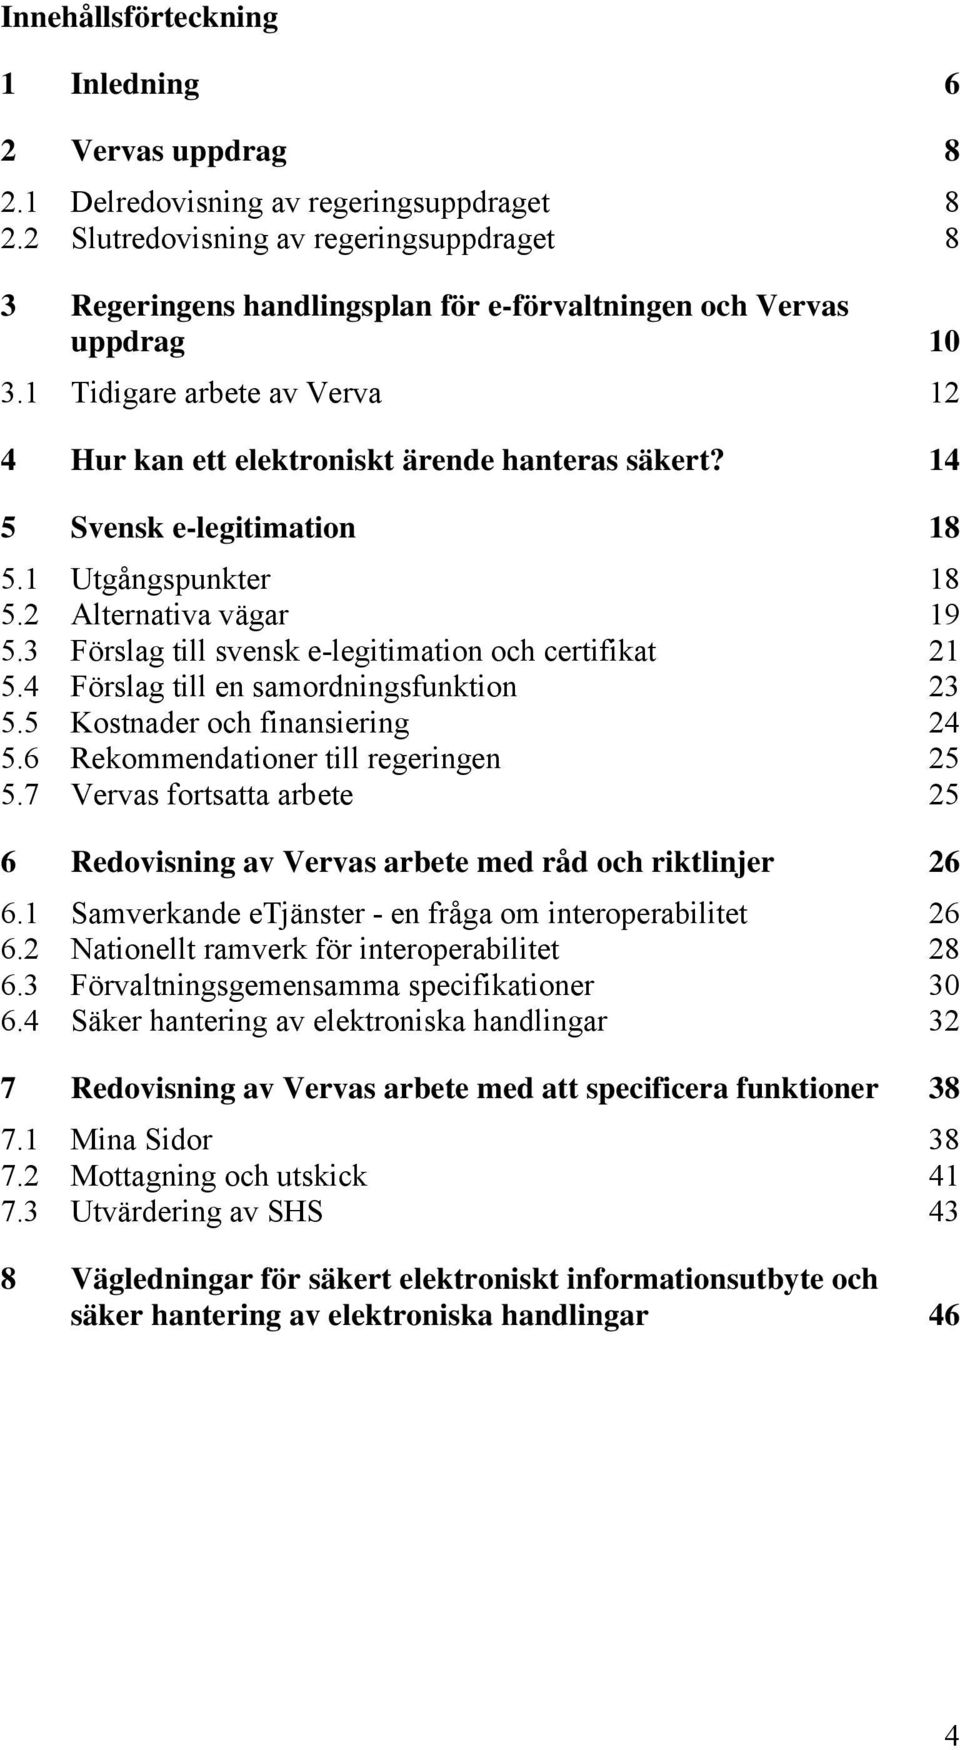 14 5 Svensk e-legitimation 18 5.1 Utgångspunkter 18 5.2 Alternativa vägar 19 5.3 Förslag till svensk e-legitimation och certifikat 21 5.4 Förslag till en samordningsfunktion 23 5.